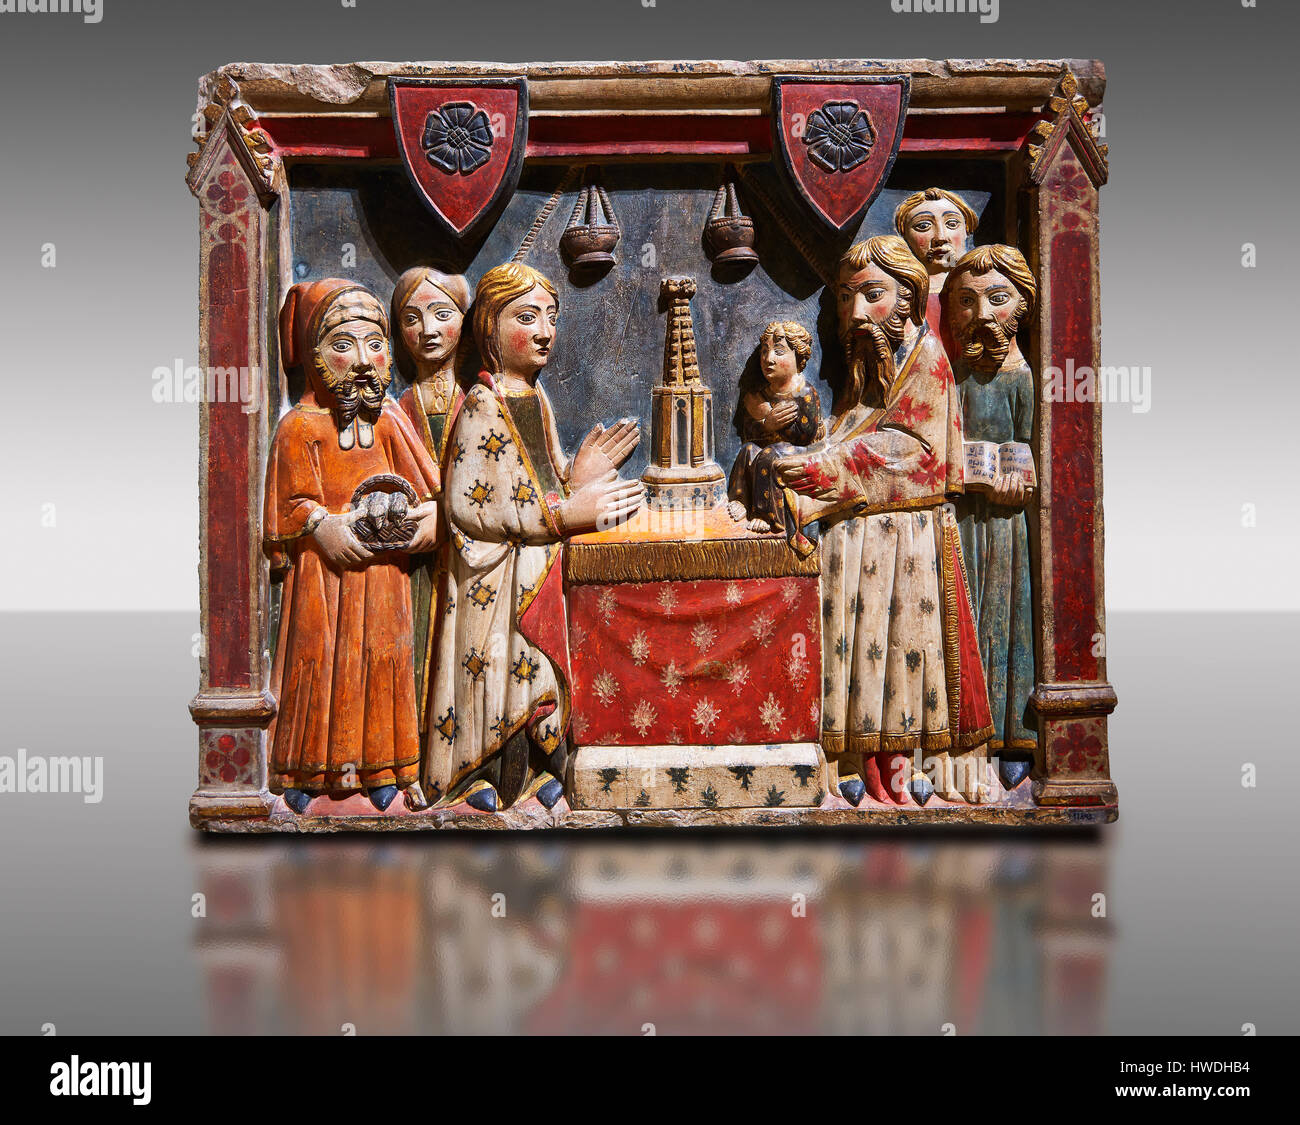 Gothic Basrelief von der Darstellung Jesu im Templeby Meister der Albesa gemalt. Nationales Museum für katalanische Kunst, Barcelona, Spanien, Inv keine: 017 Stockfoto